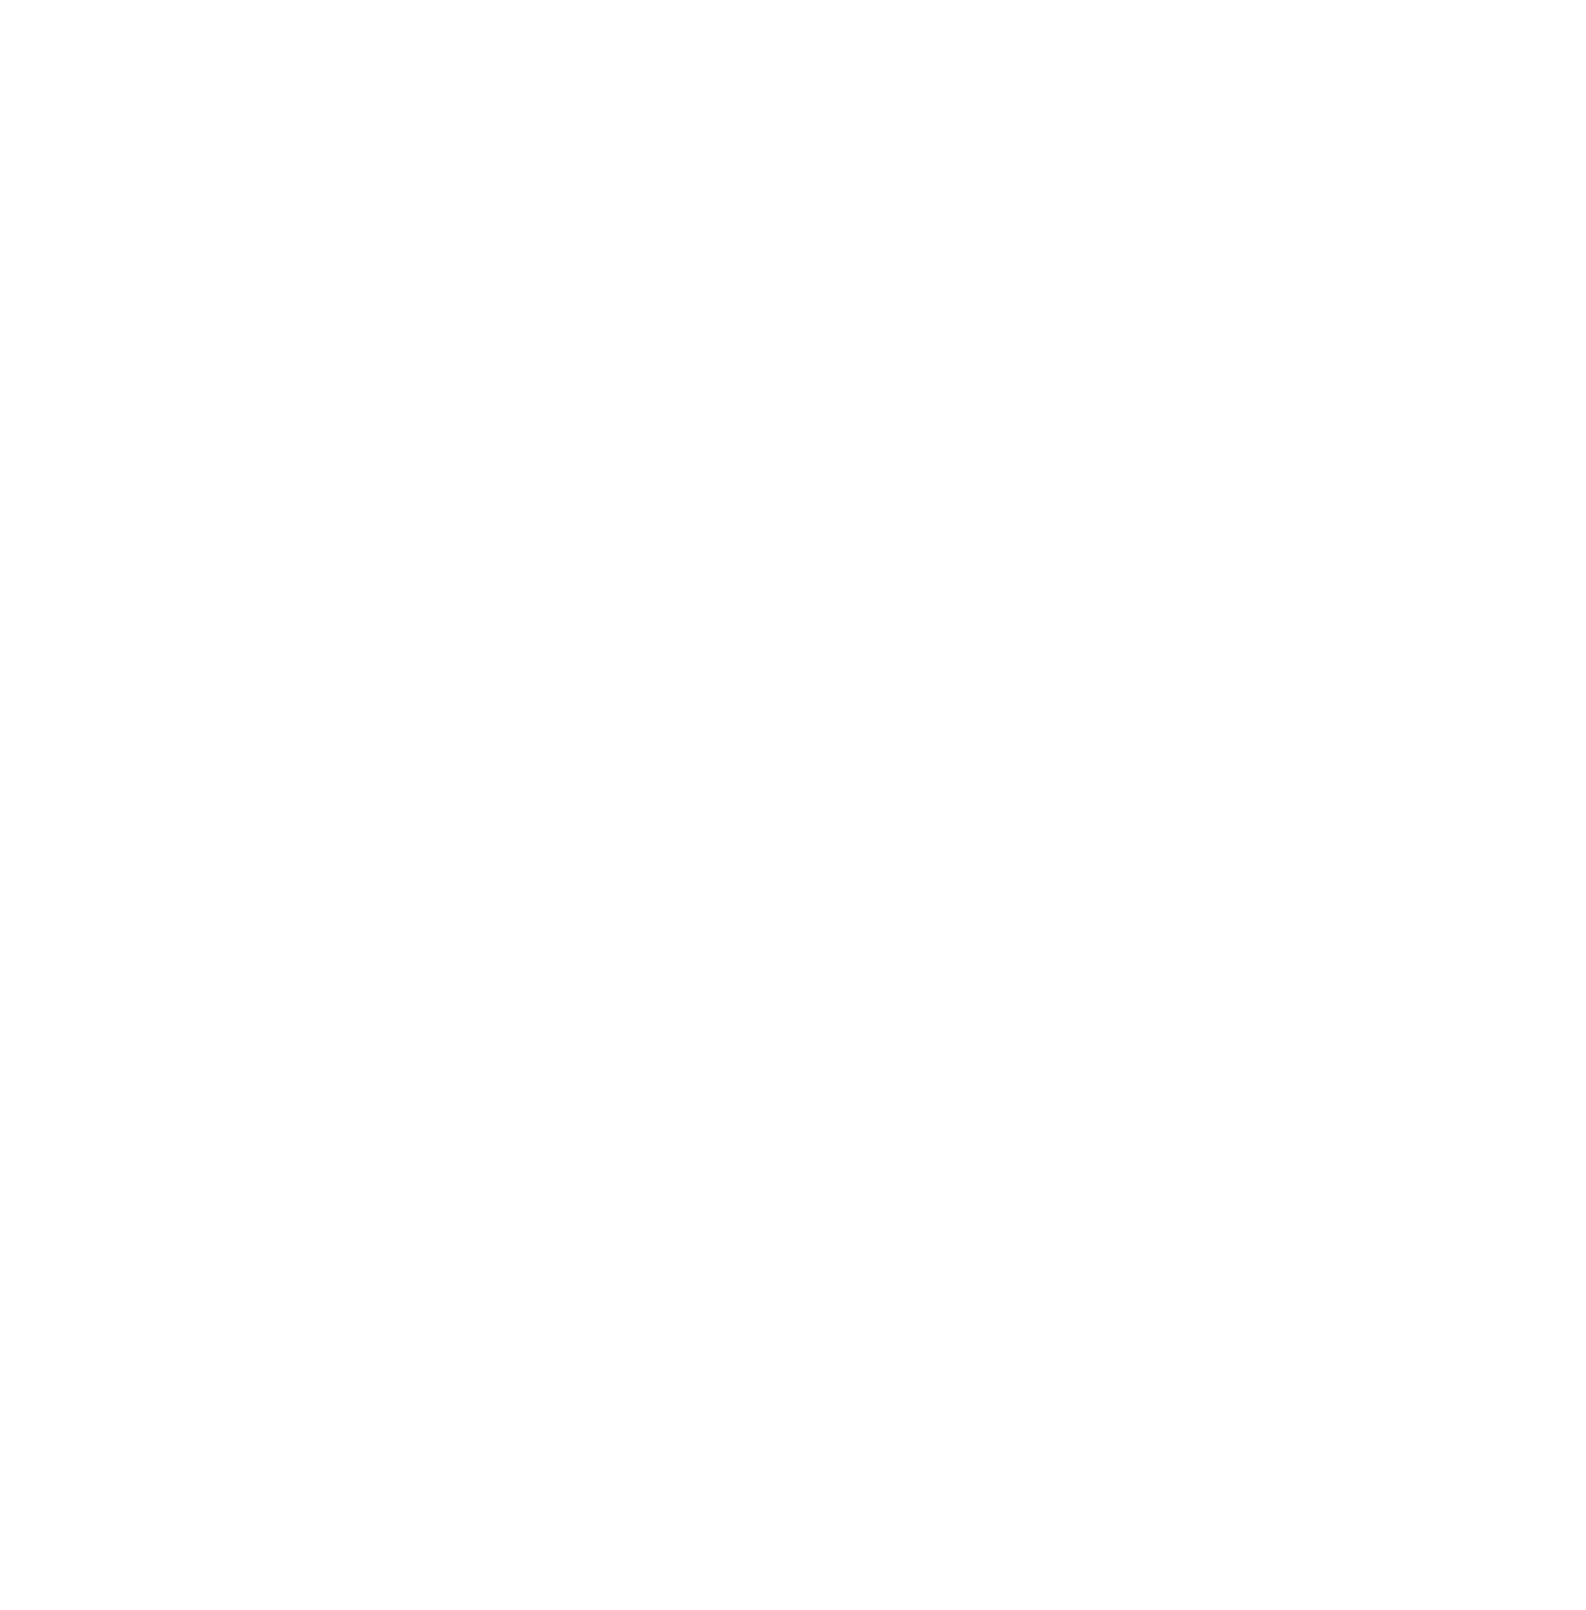 Vinci Partners logo for dark backgrounds (transparent PNG)